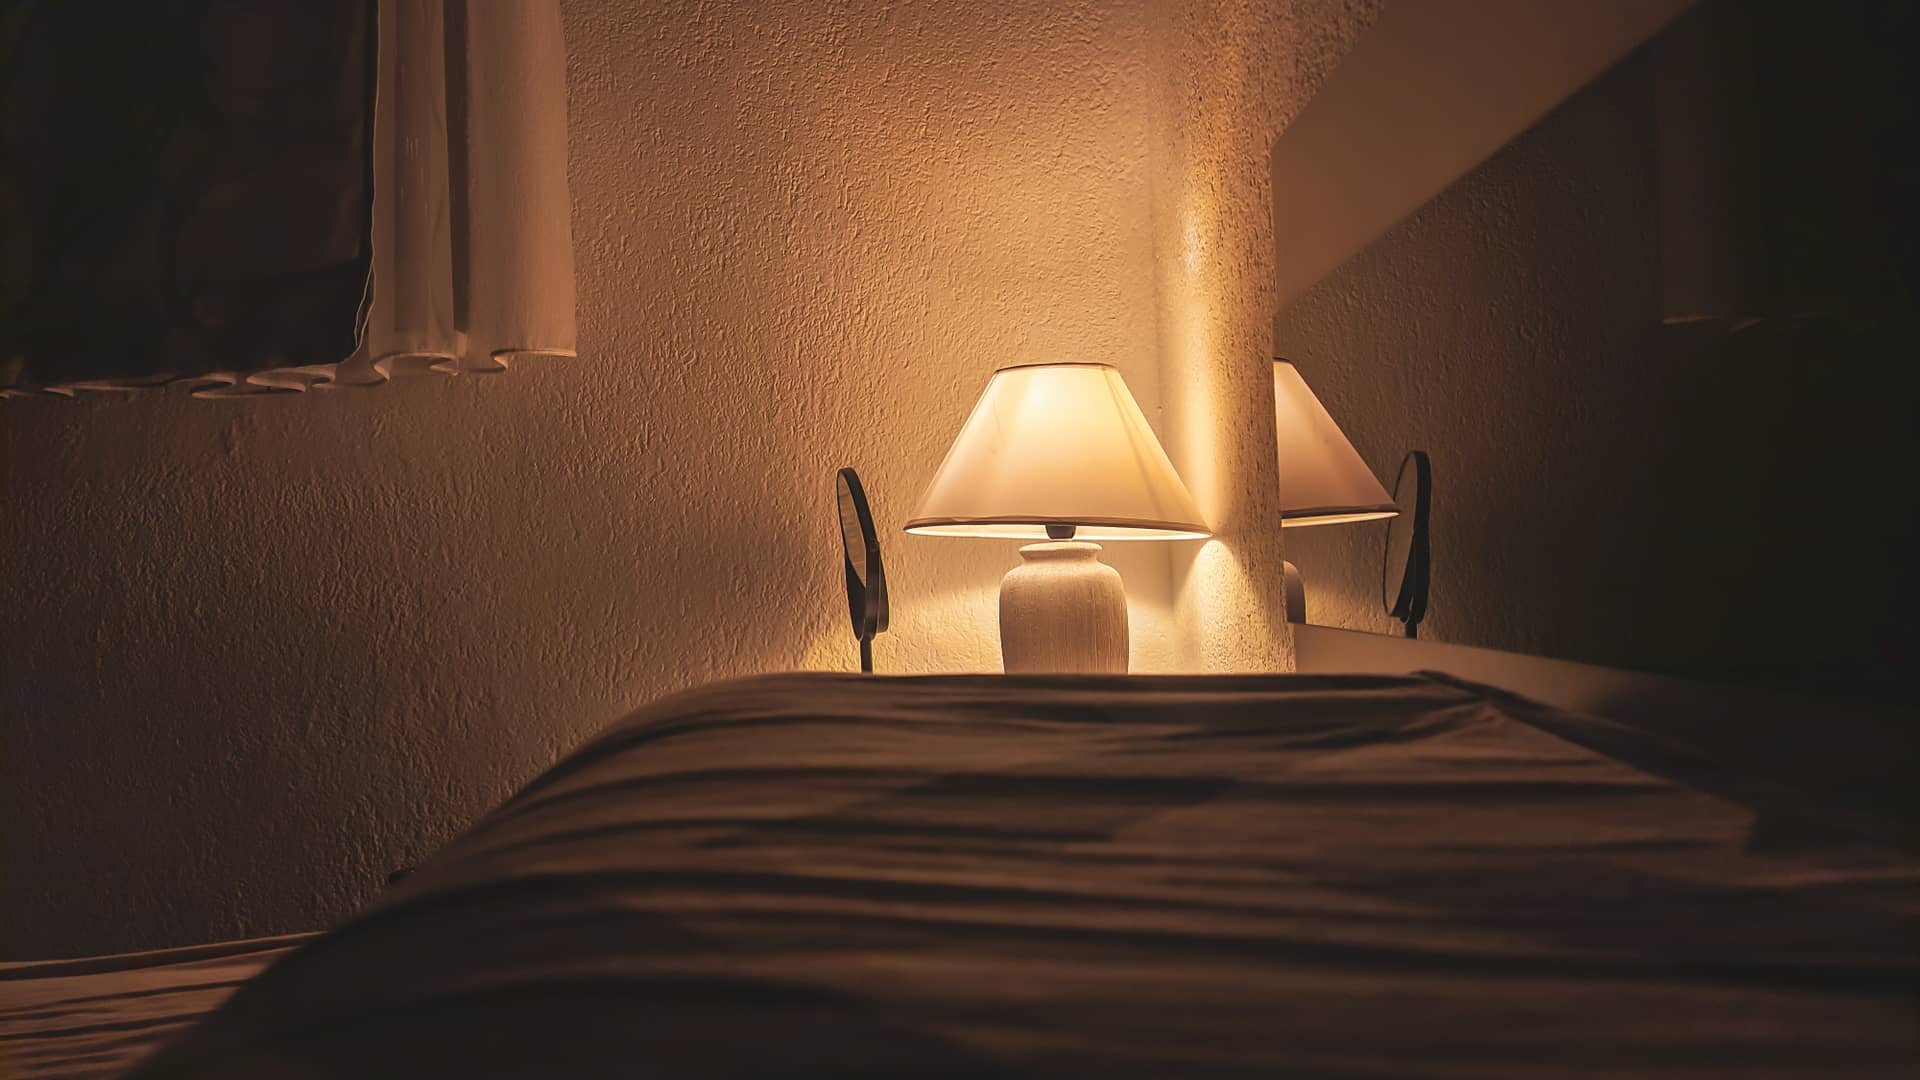 mesa con una lampara de noche encendida de una persona que tiene una de las tarifas 3-2 de repsol